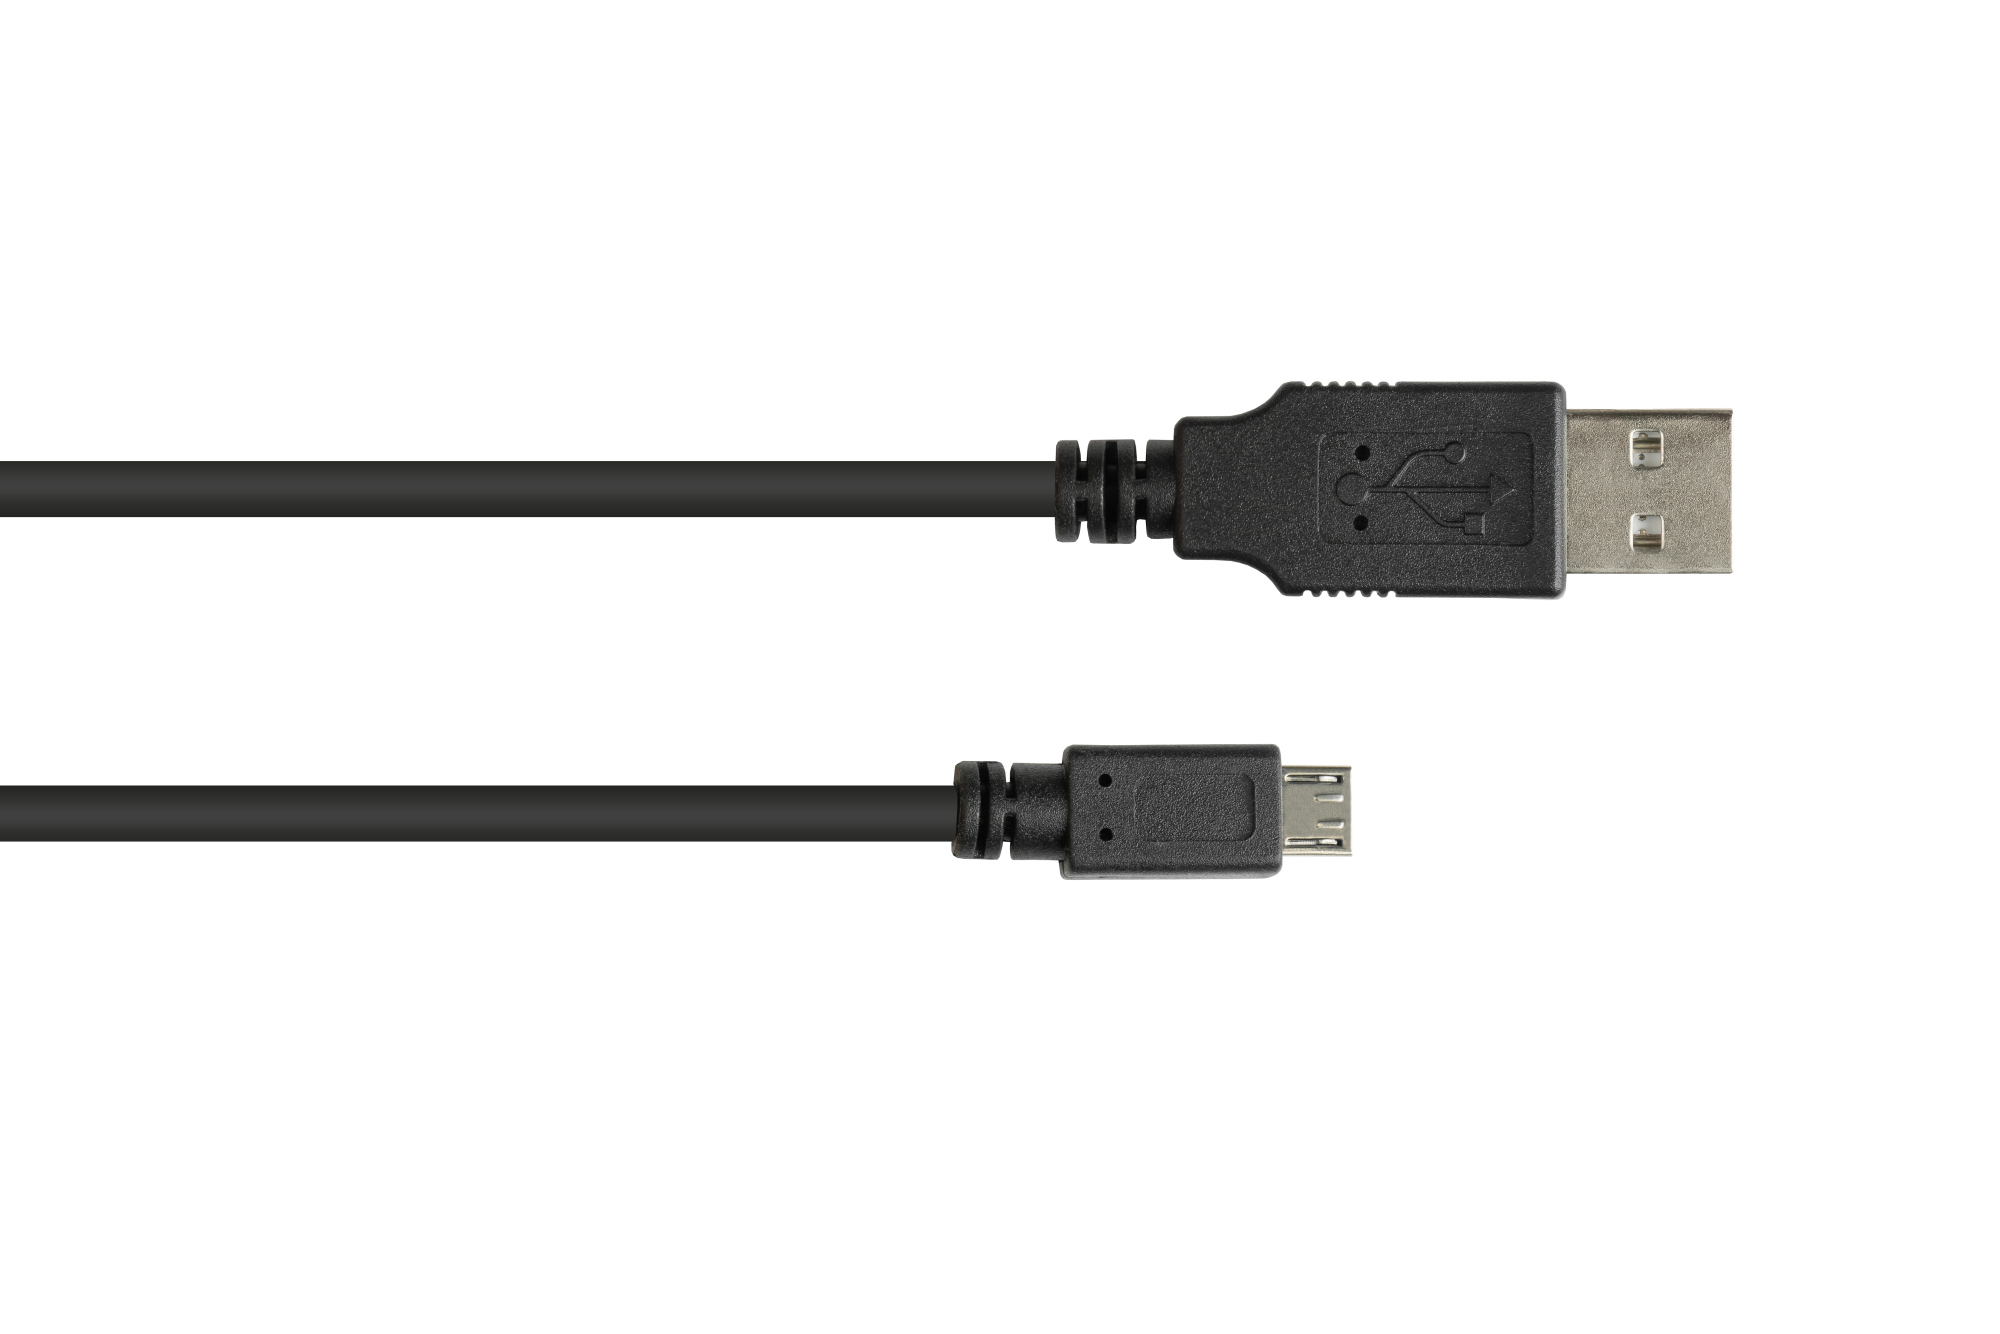 Anschlusskabel USB 2.0 Stecker A an Stecker Micro B, schwarz, 0,6m, Good Connections®